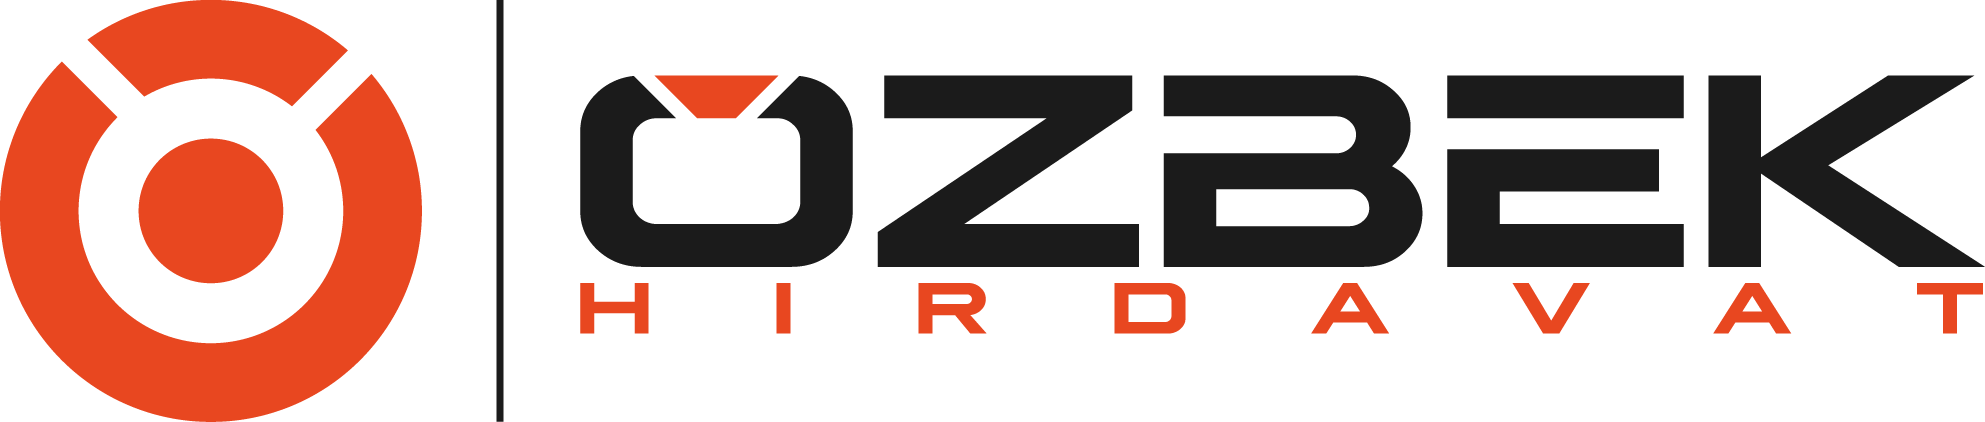 Özbek Logo